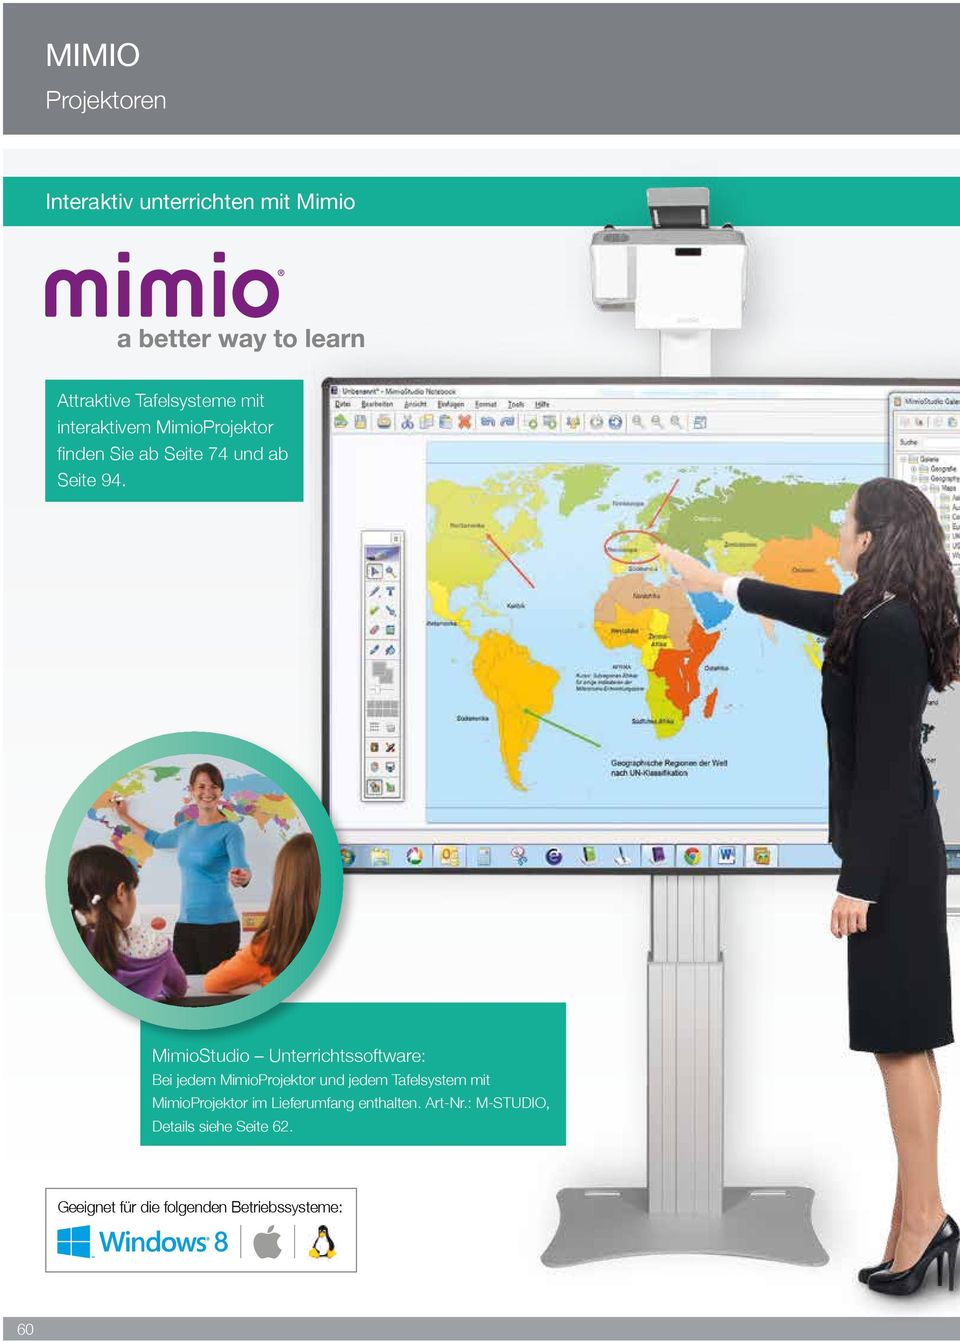 MimioStudio Unterrichtssoftware: Bei jedem MimioProjektor und jedem Tafelsystem mit MimioProjektor im Lieferumfang enthalten.